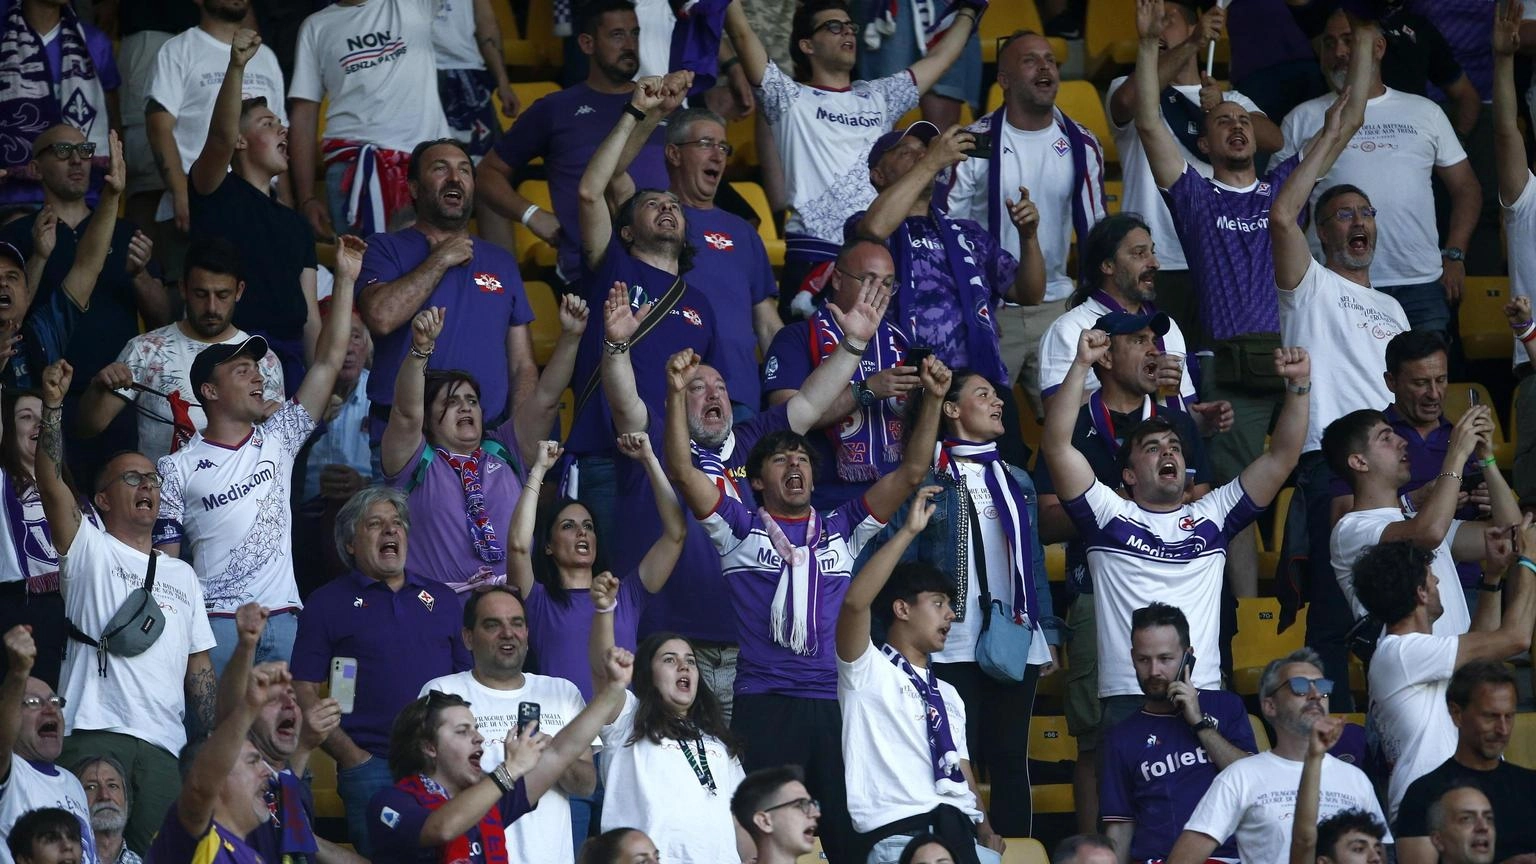 Contestazione tifosi Fiorentina 'un fallimento, pazienza finita'